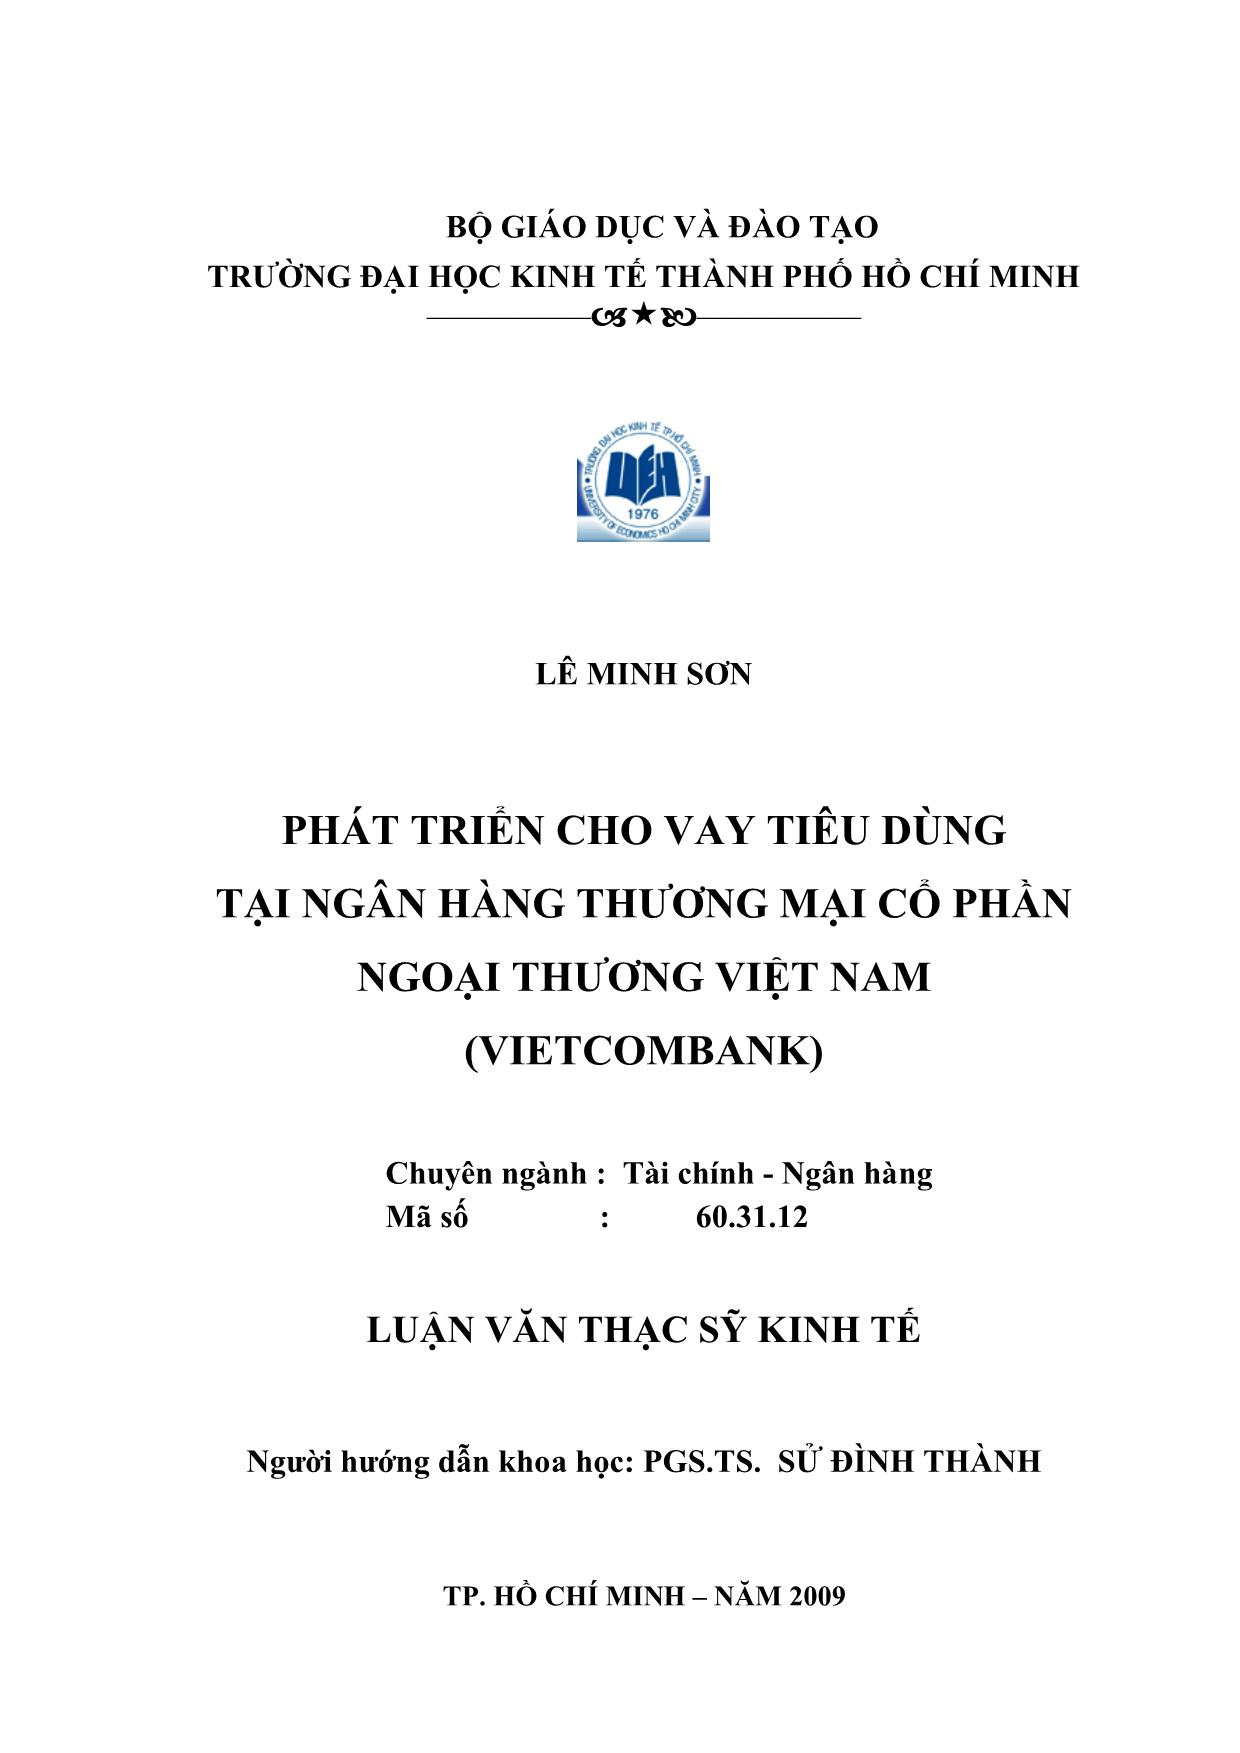 Luận văn Phát triển cho vay tiêu dùng tại ngân hàng thương mại cổ phần ngoại thương Việt Nam trang 2